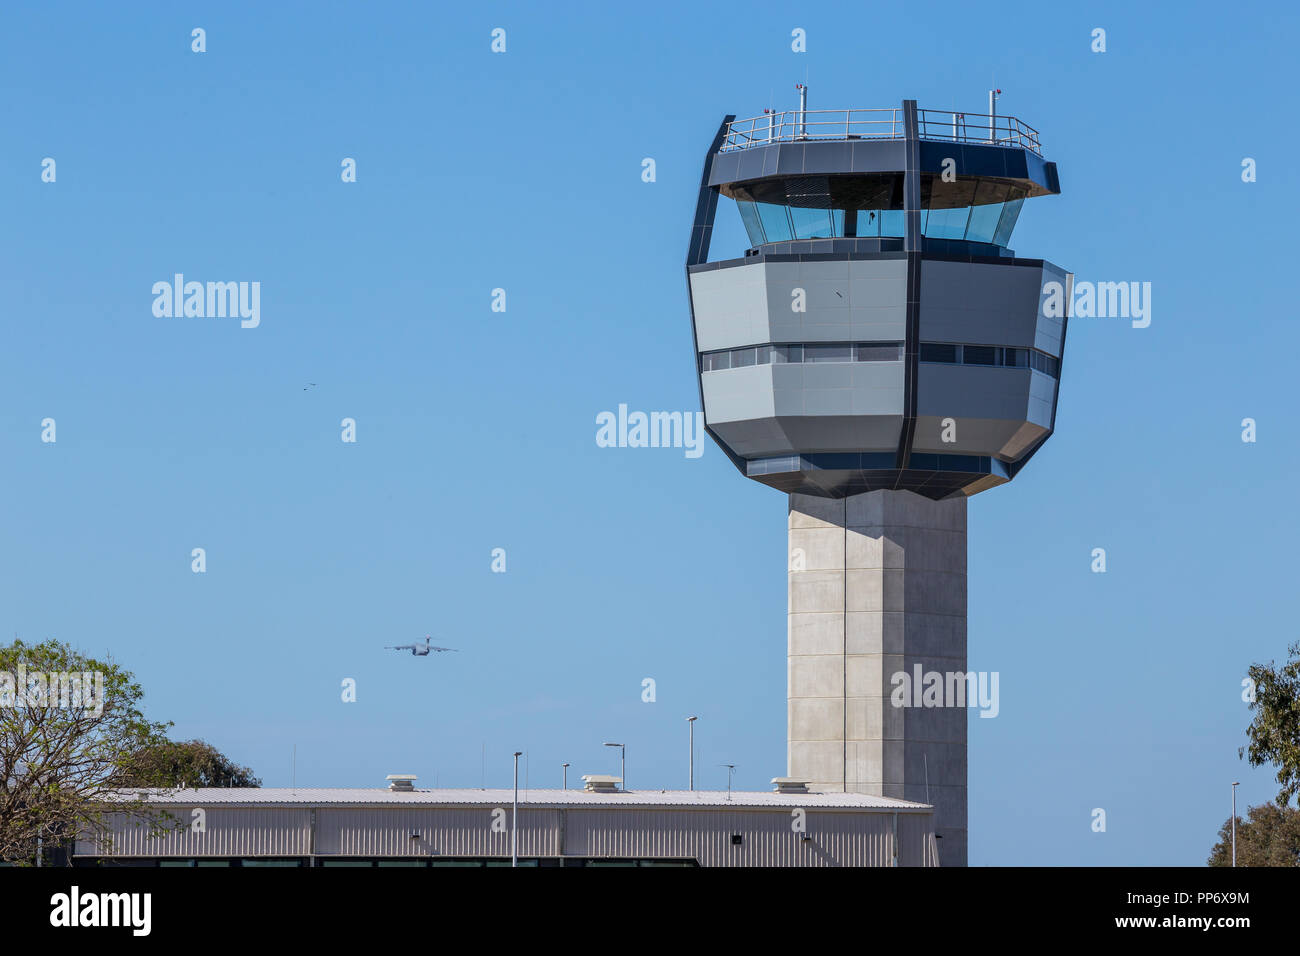 Aeroporto militare, Royal Australian Air Force Base Amberley nuova torre di controllo, un C17 Globemaster prendendo il largo a sinistra della torre. Foto Stock